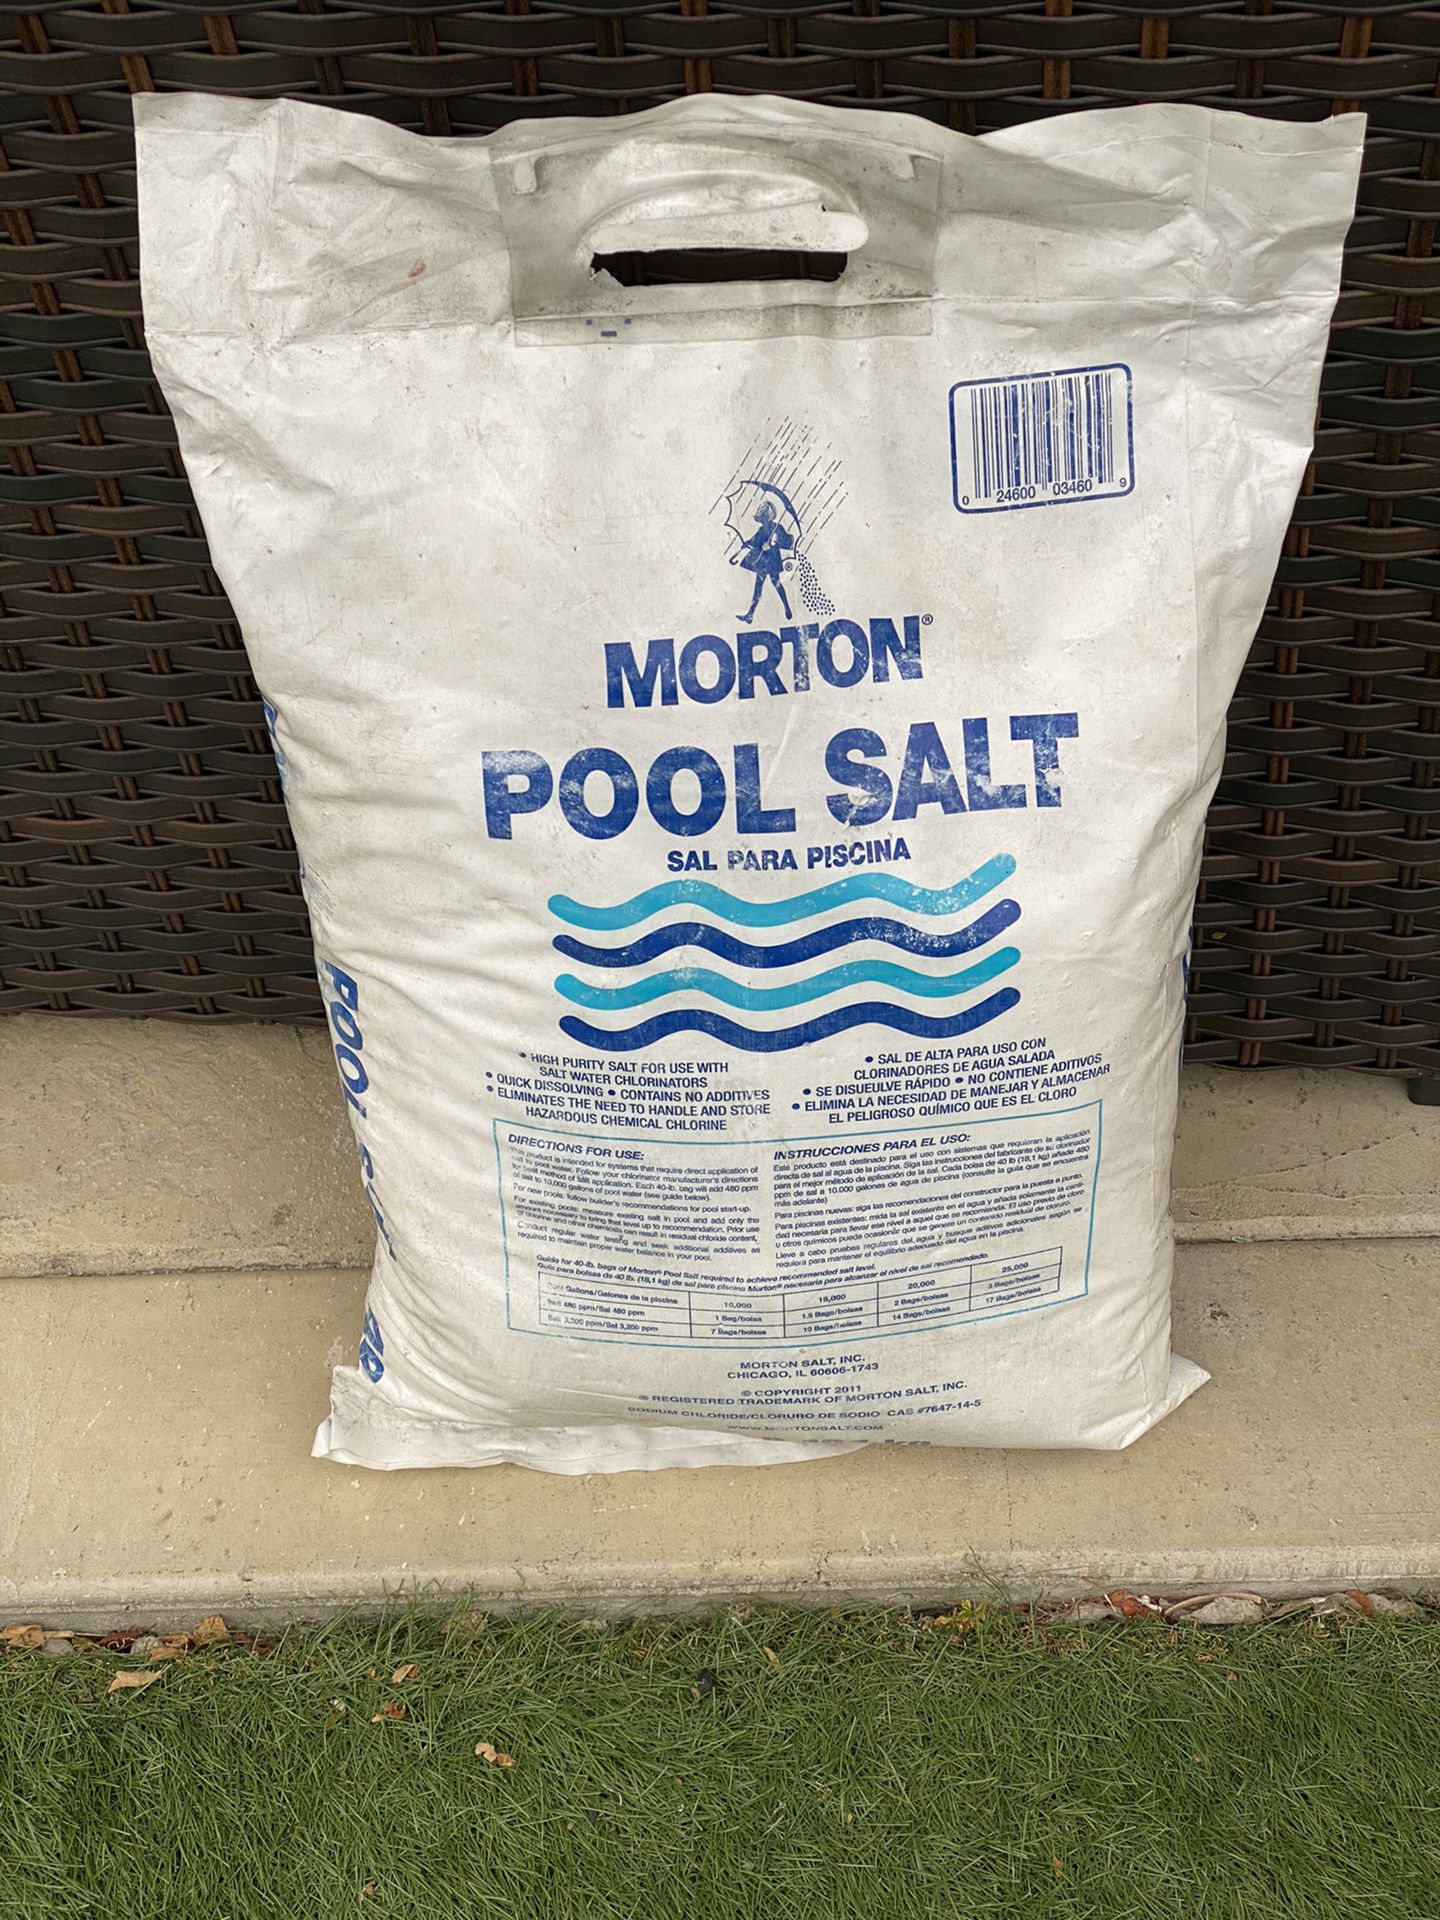 FREE poool salt